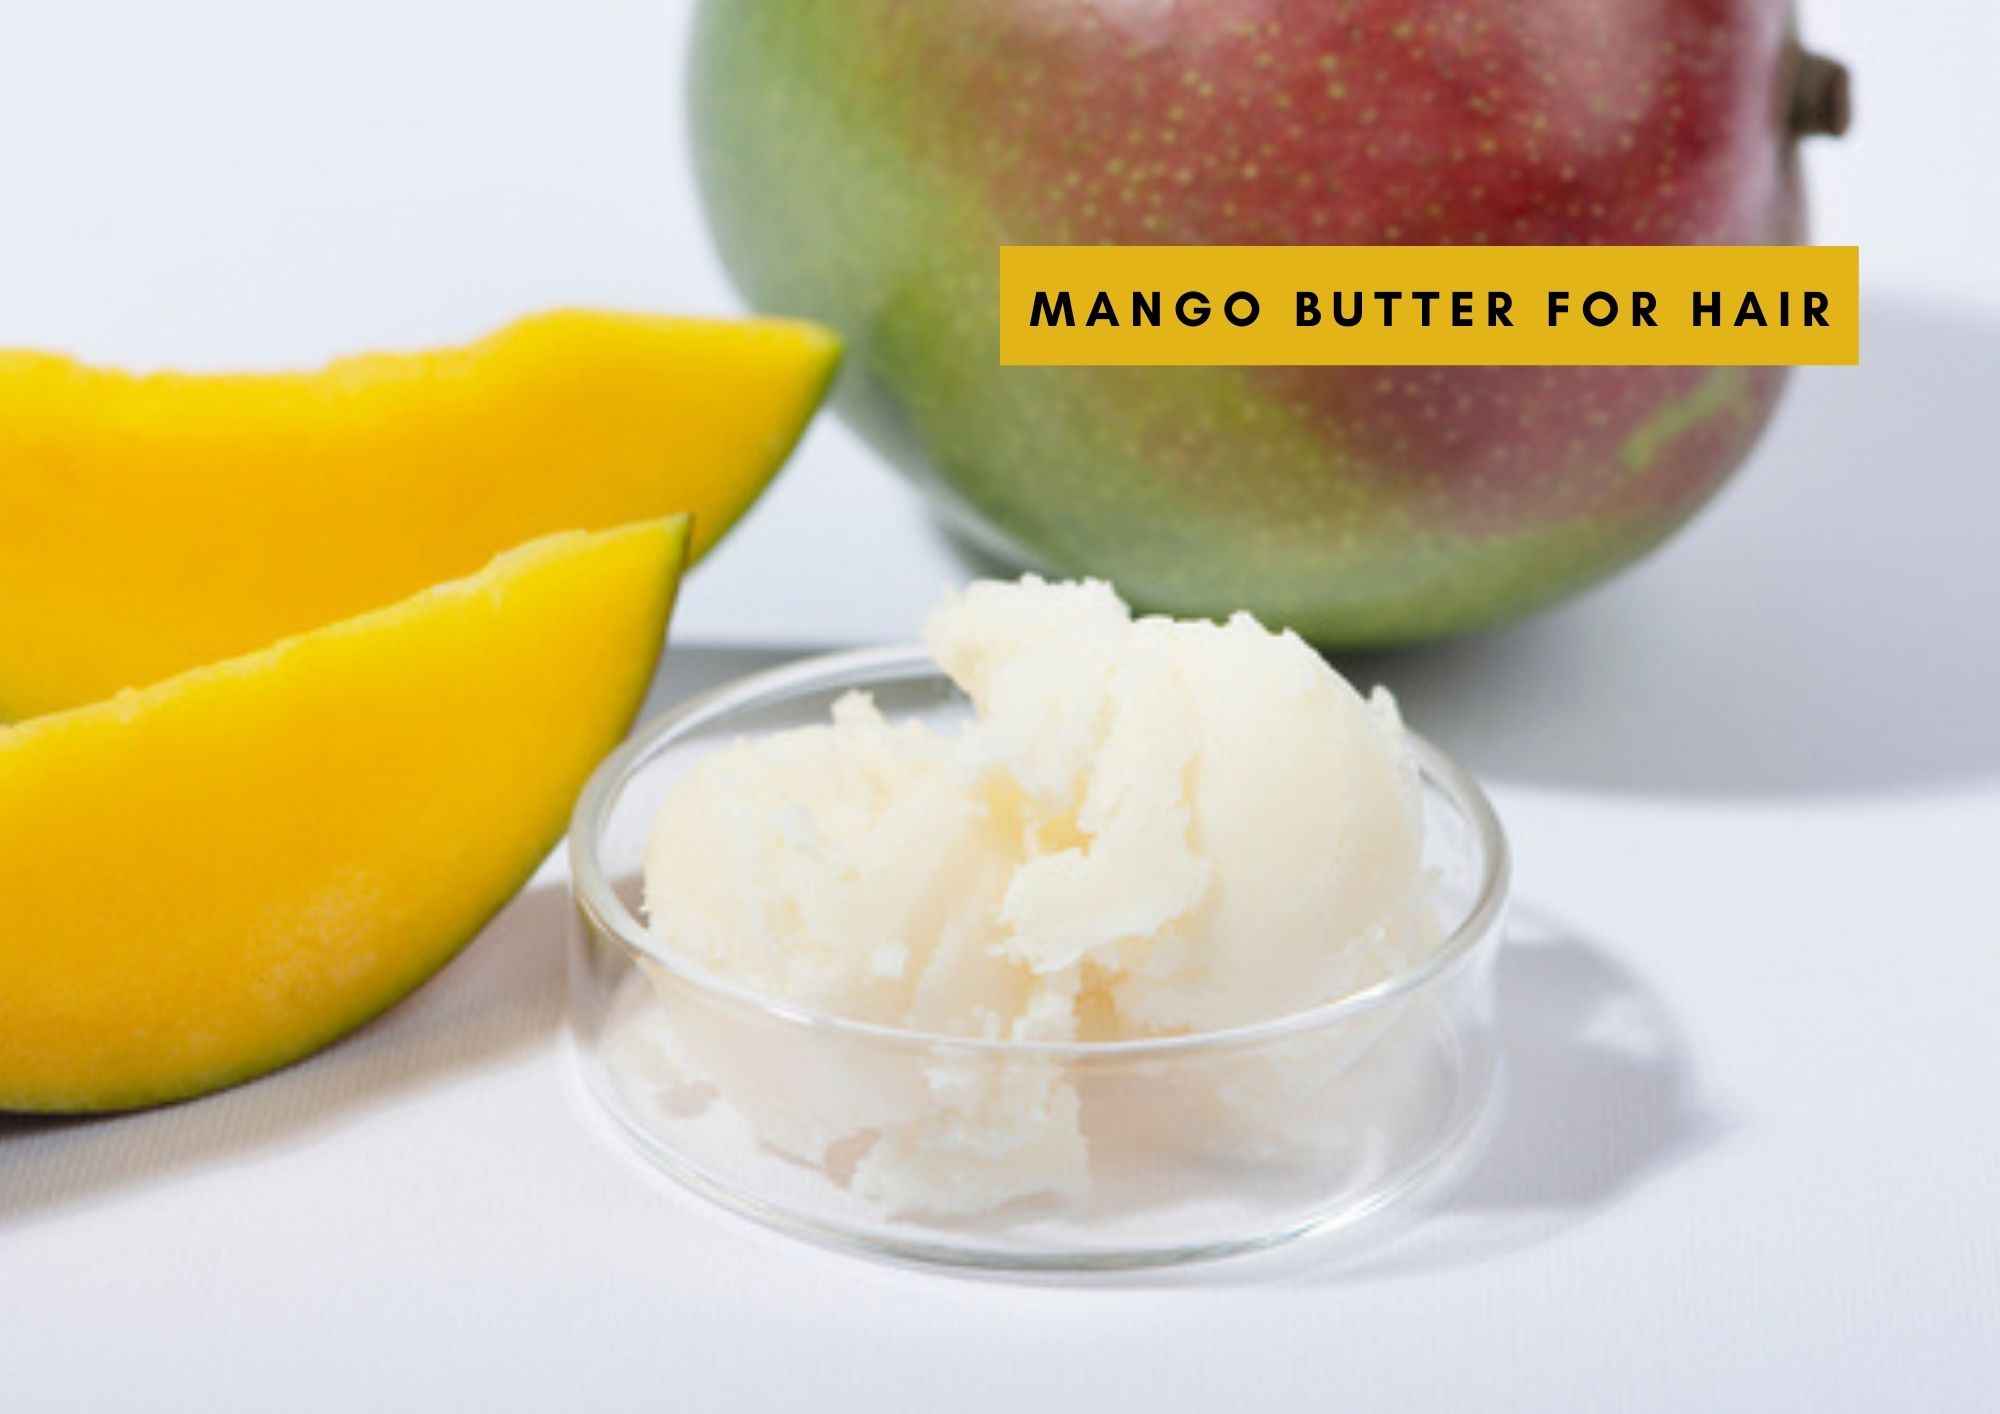 Mango butter benefits for hair